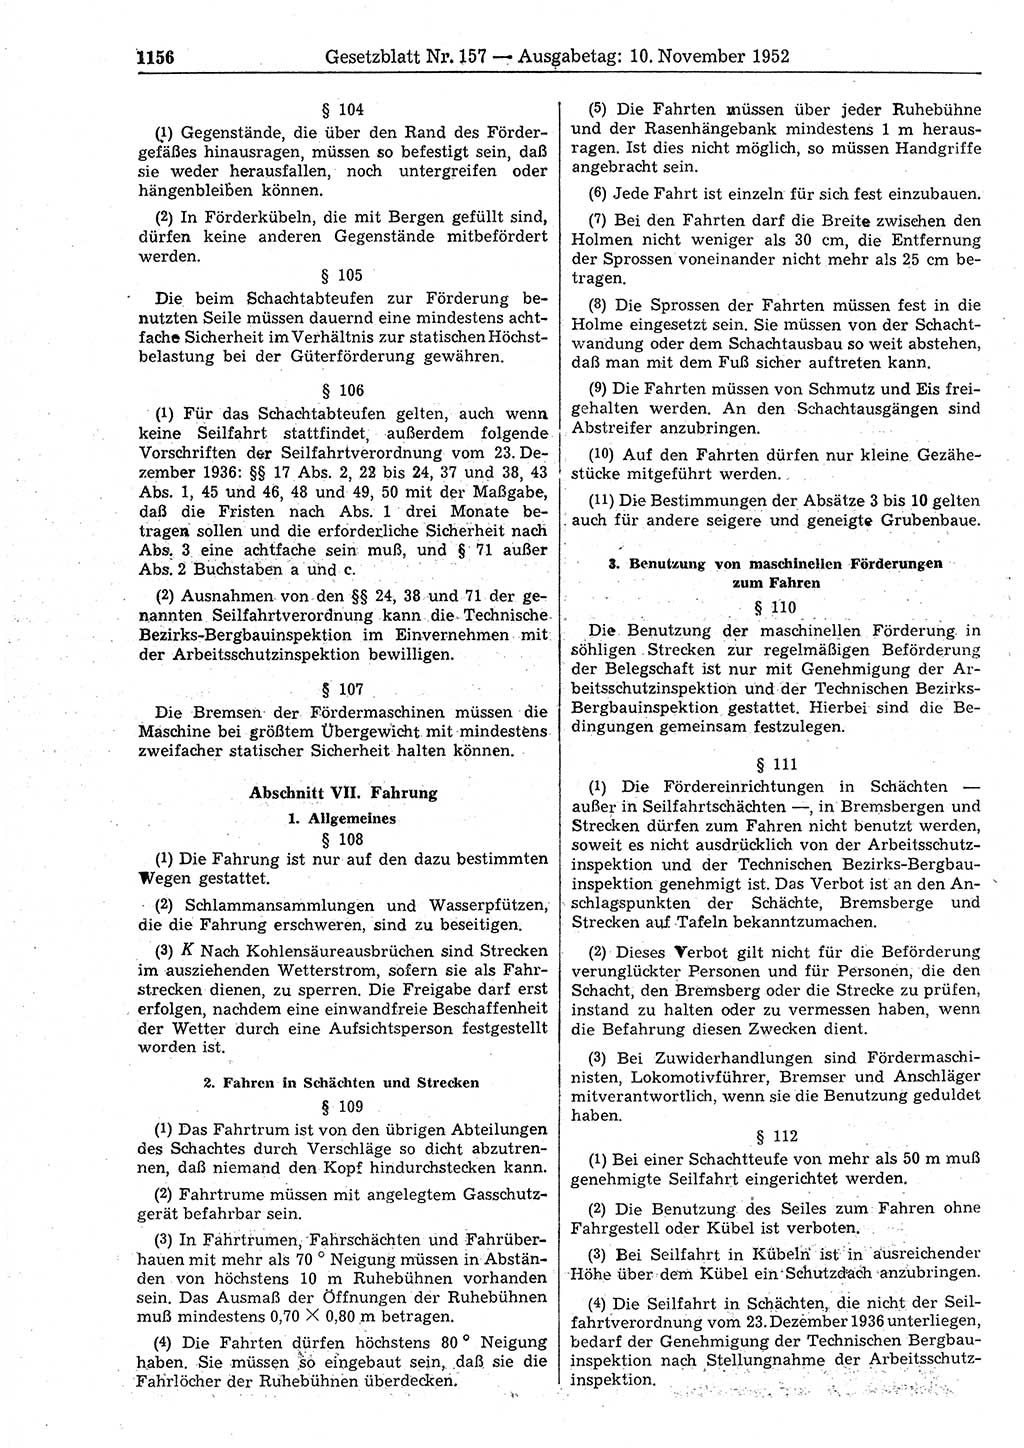 Gesetzblatt (GBl.) der Deutschen Demokratischen Republik (DDR) 1952, Seite 1156 (GBl. DDR 1952, S. 1156)